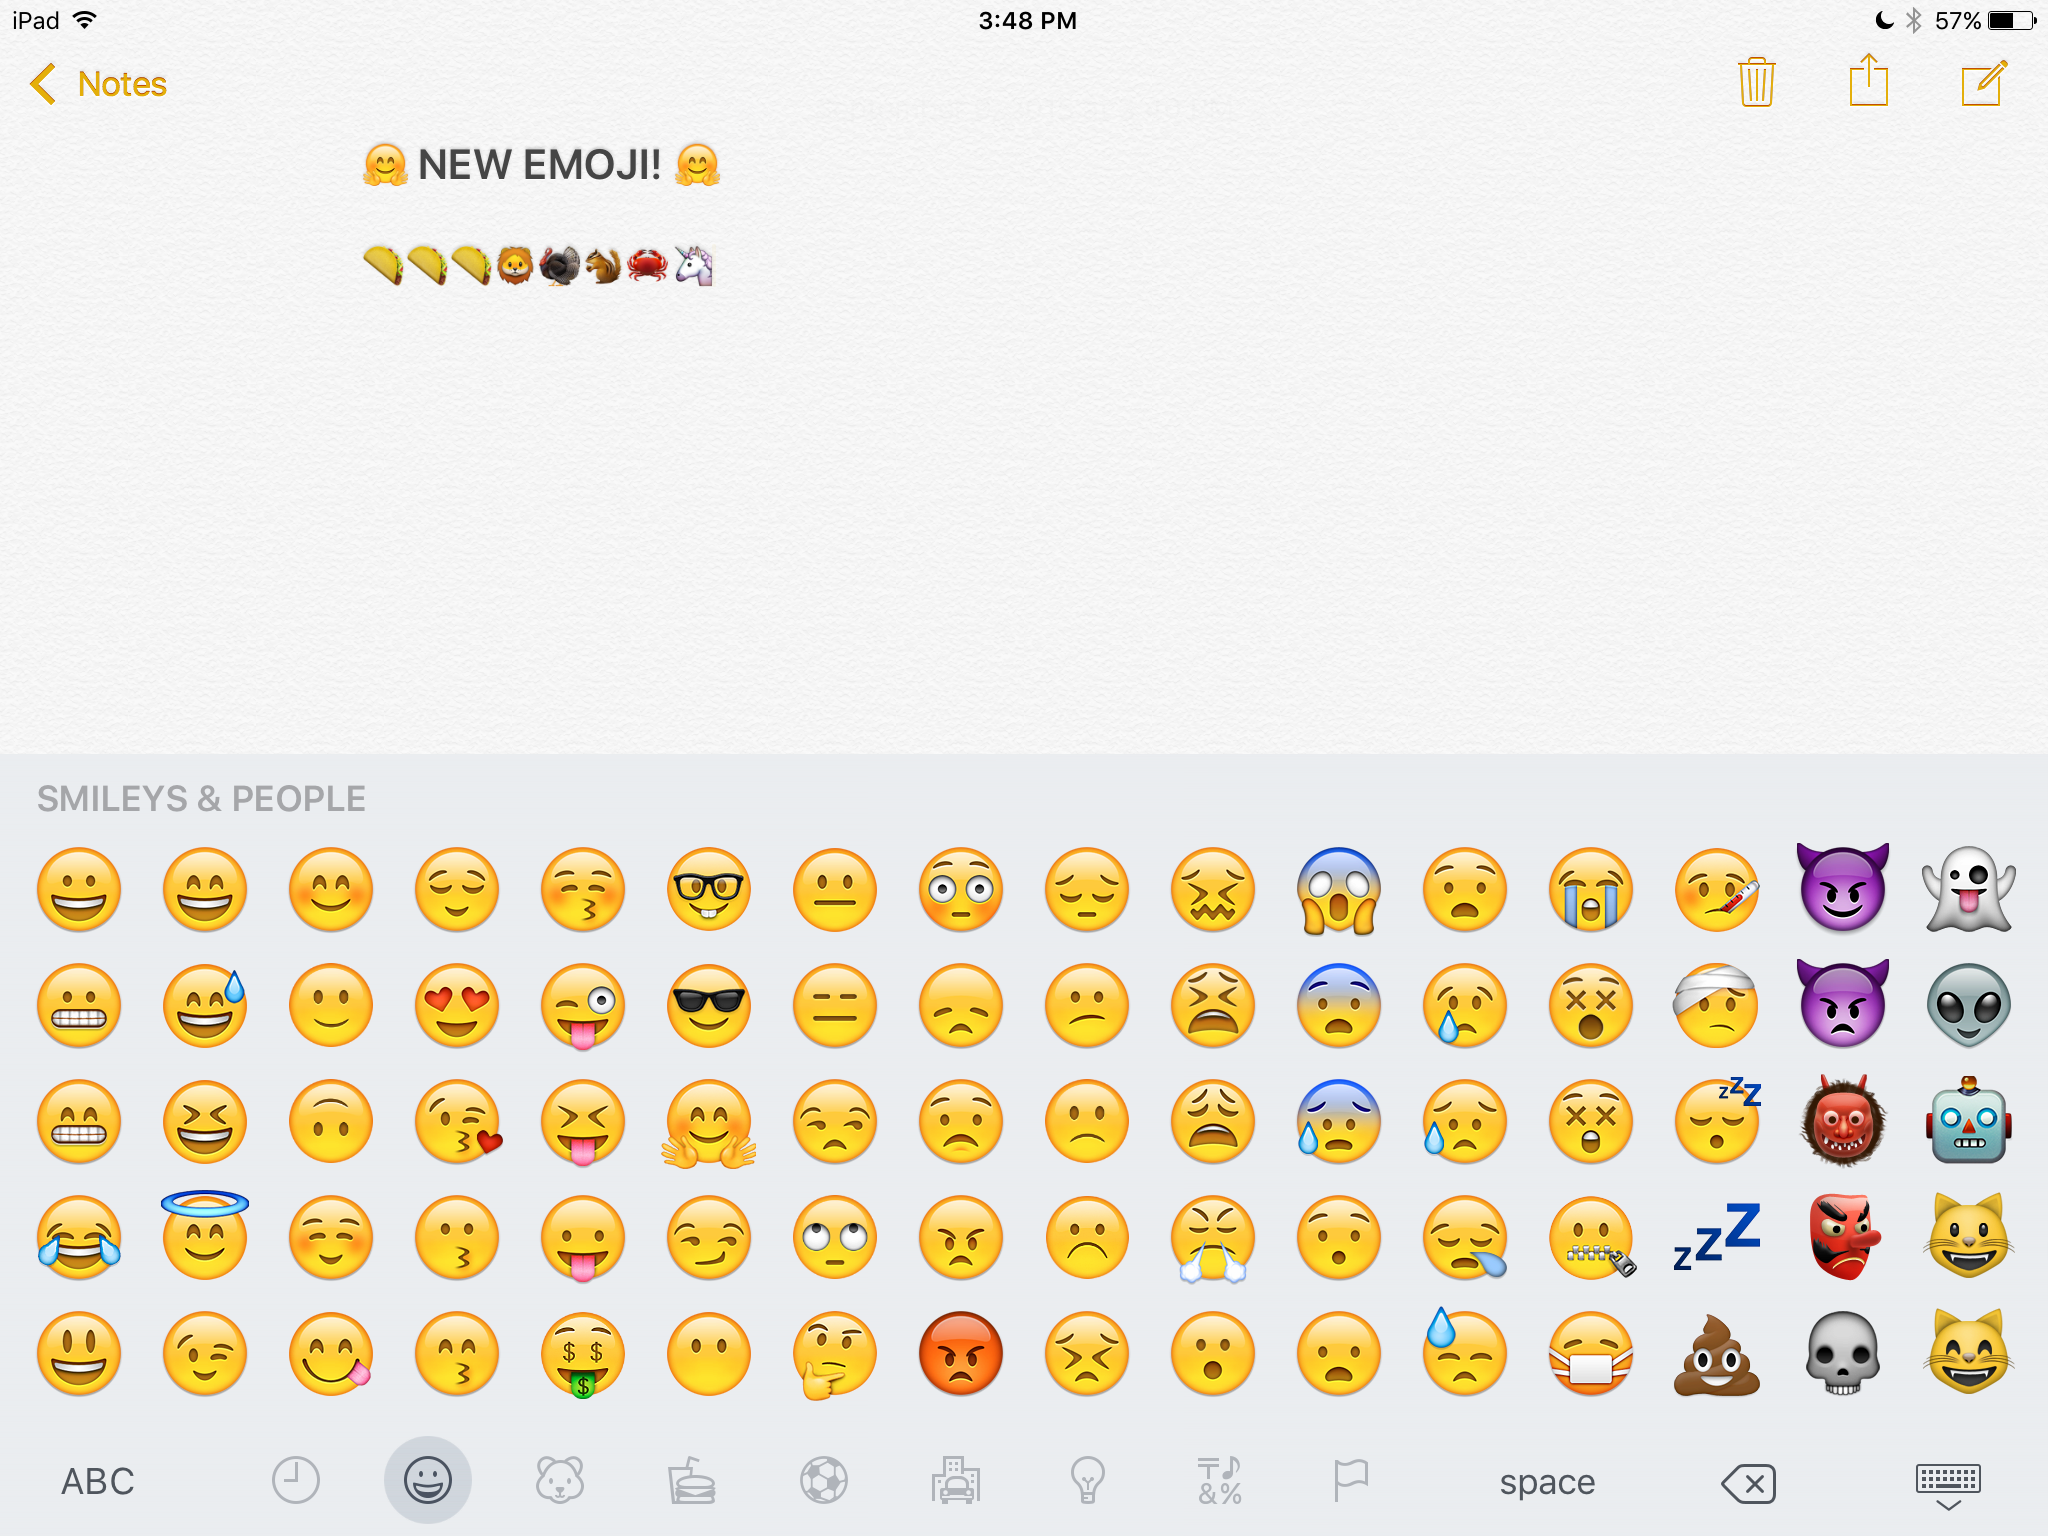 iOS 9.1 emoji's